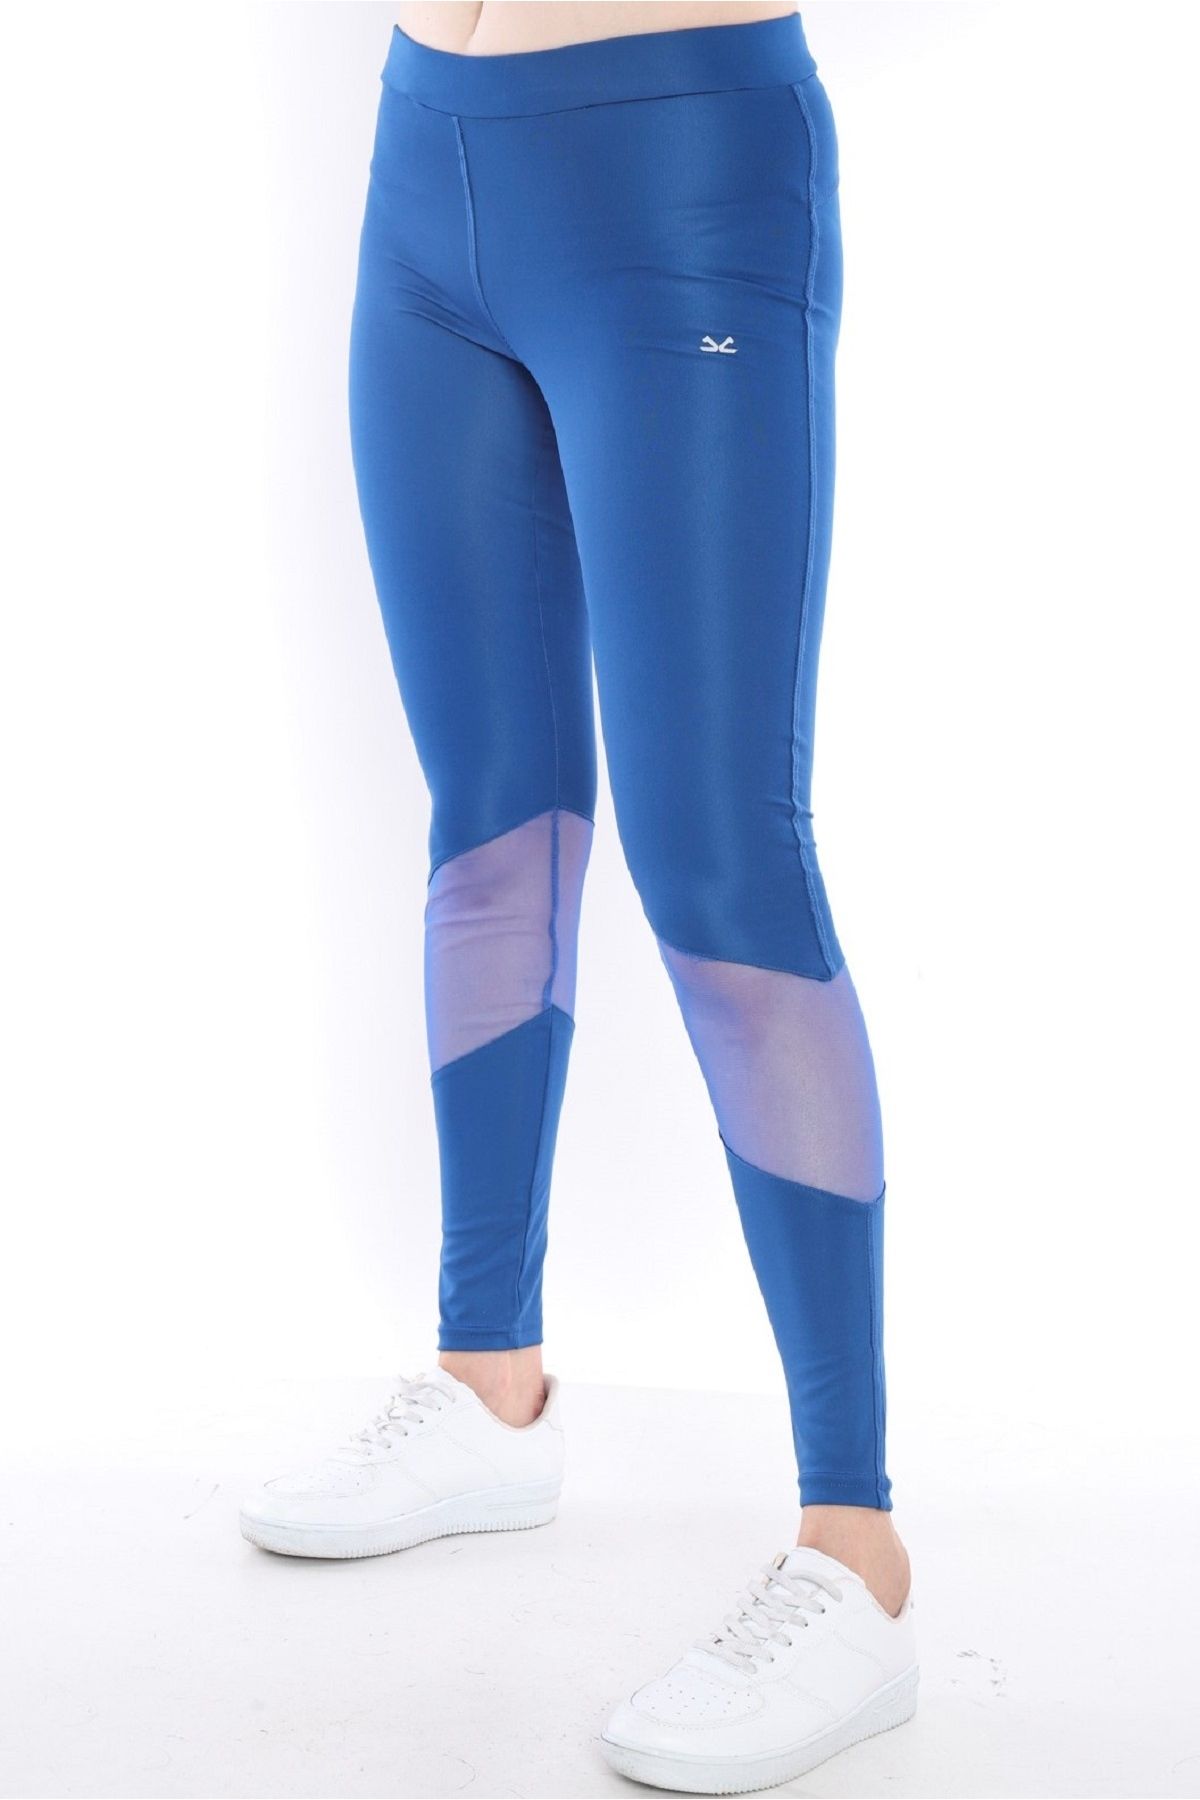 Escetic Saks Mavi Kadın Polyester Normal Bel Diz Altı Transparan Detay Spor Tayt 0351